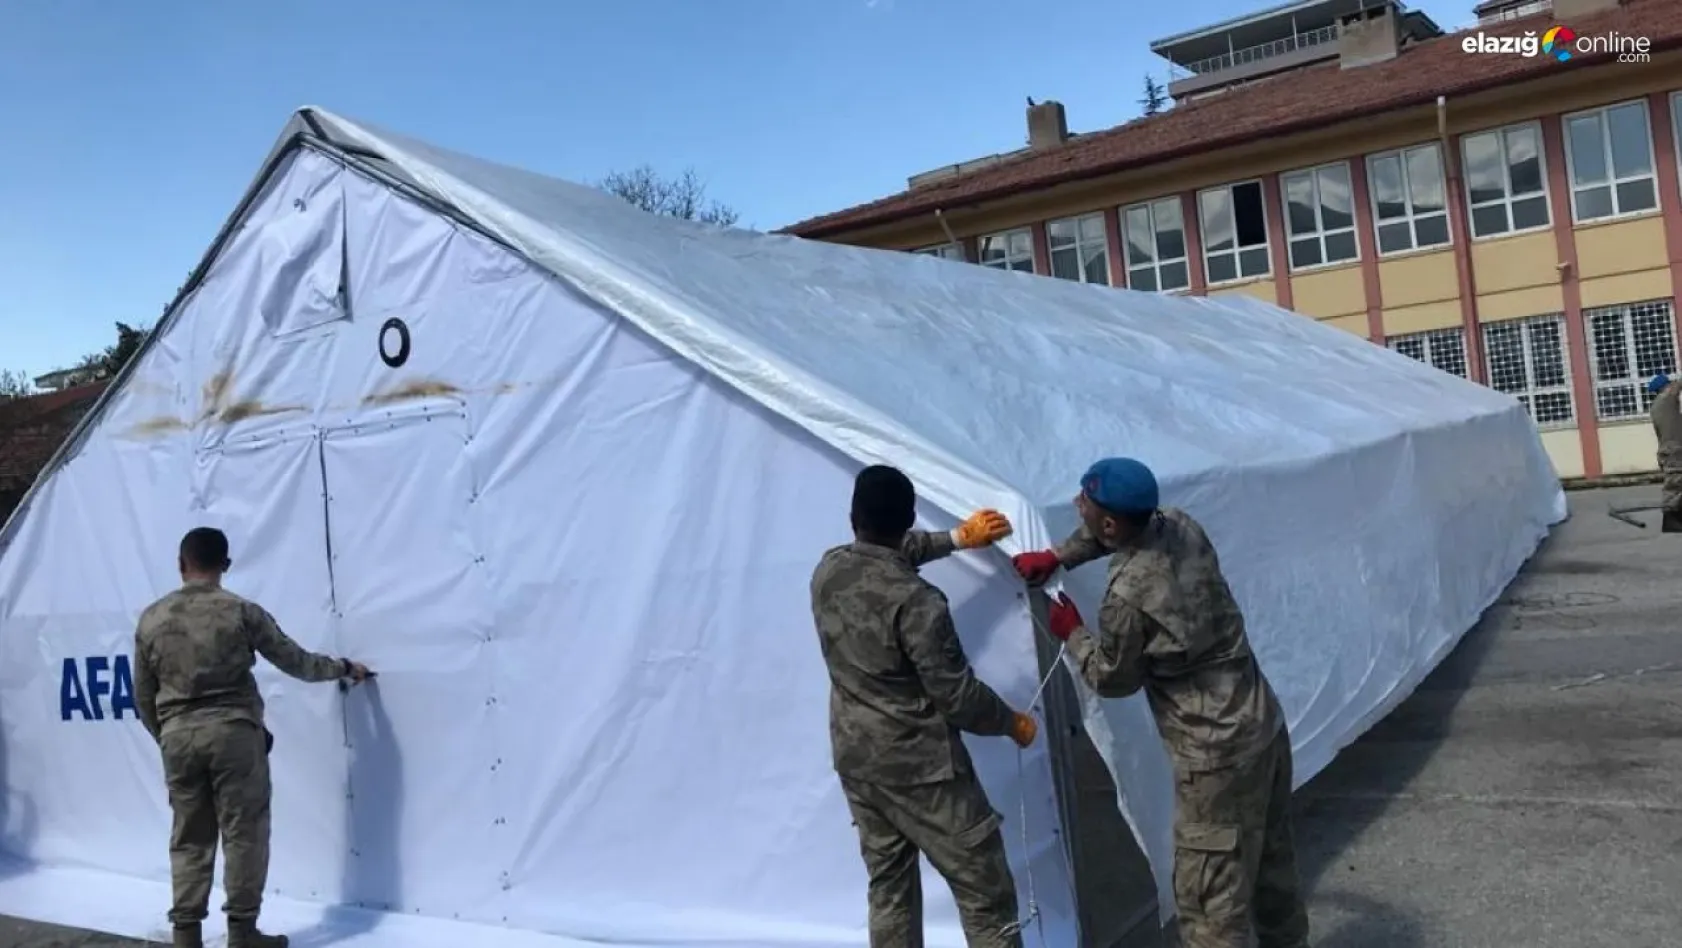 Jandarma öğrenciler için 14 derslik çadır kurdu